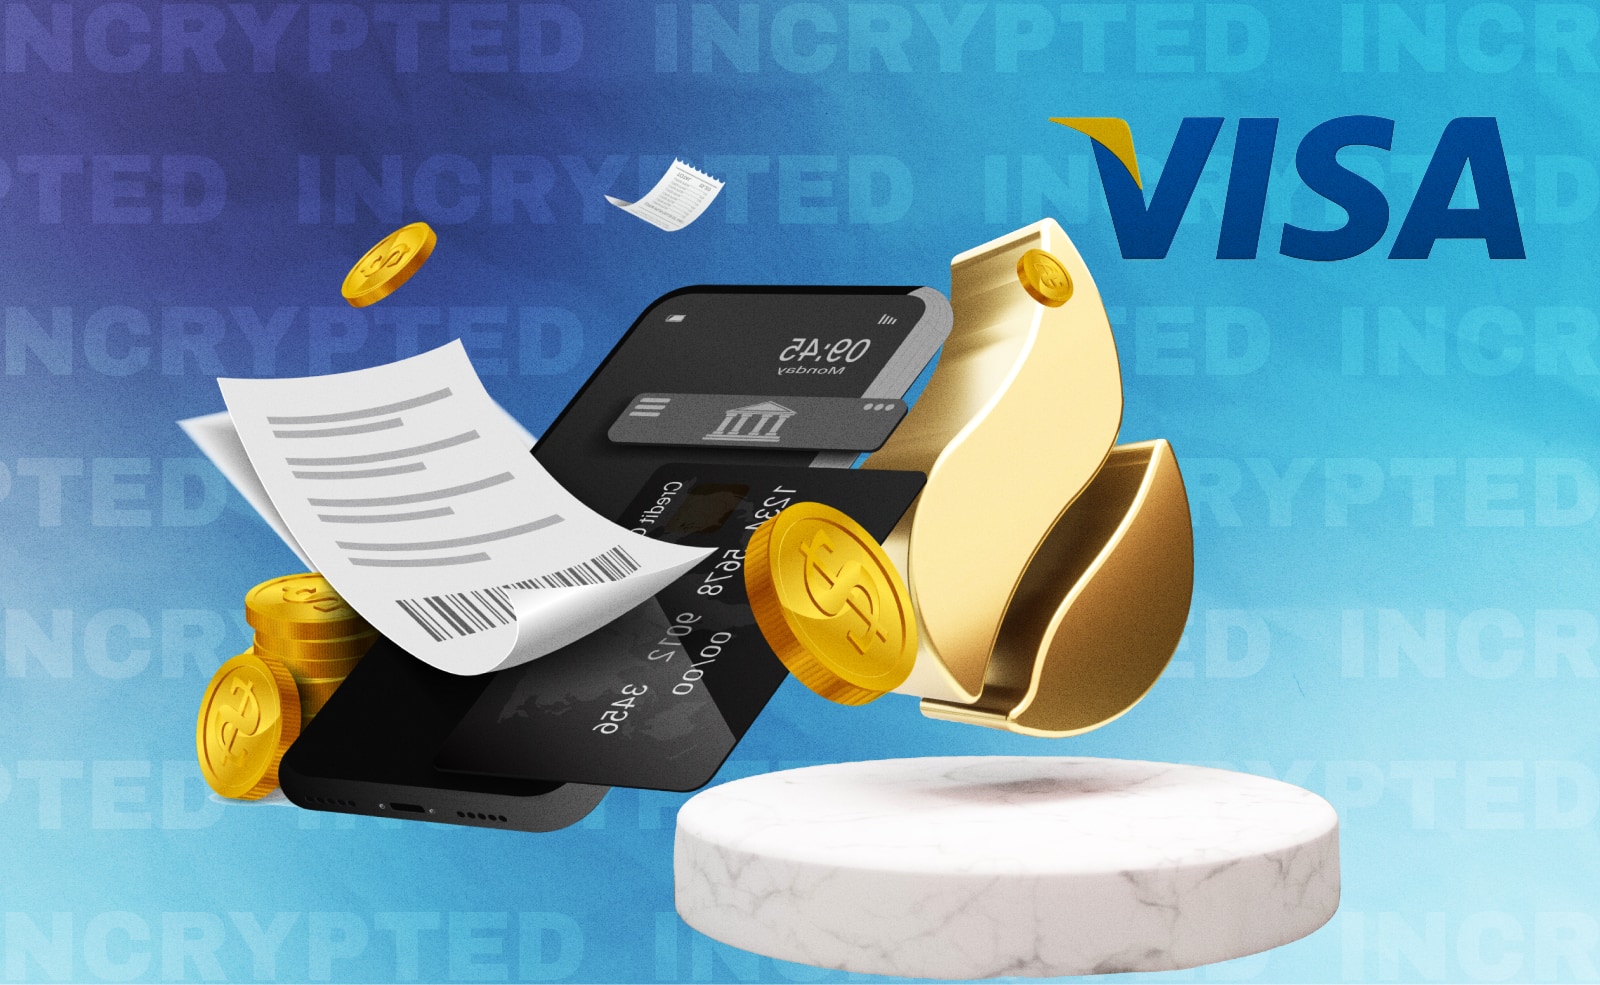 Крипто-биржа Huobi объявила о партнерстве с Visa Участники запустят новые банковские карты с привязкой к счетам пользователей на платформе